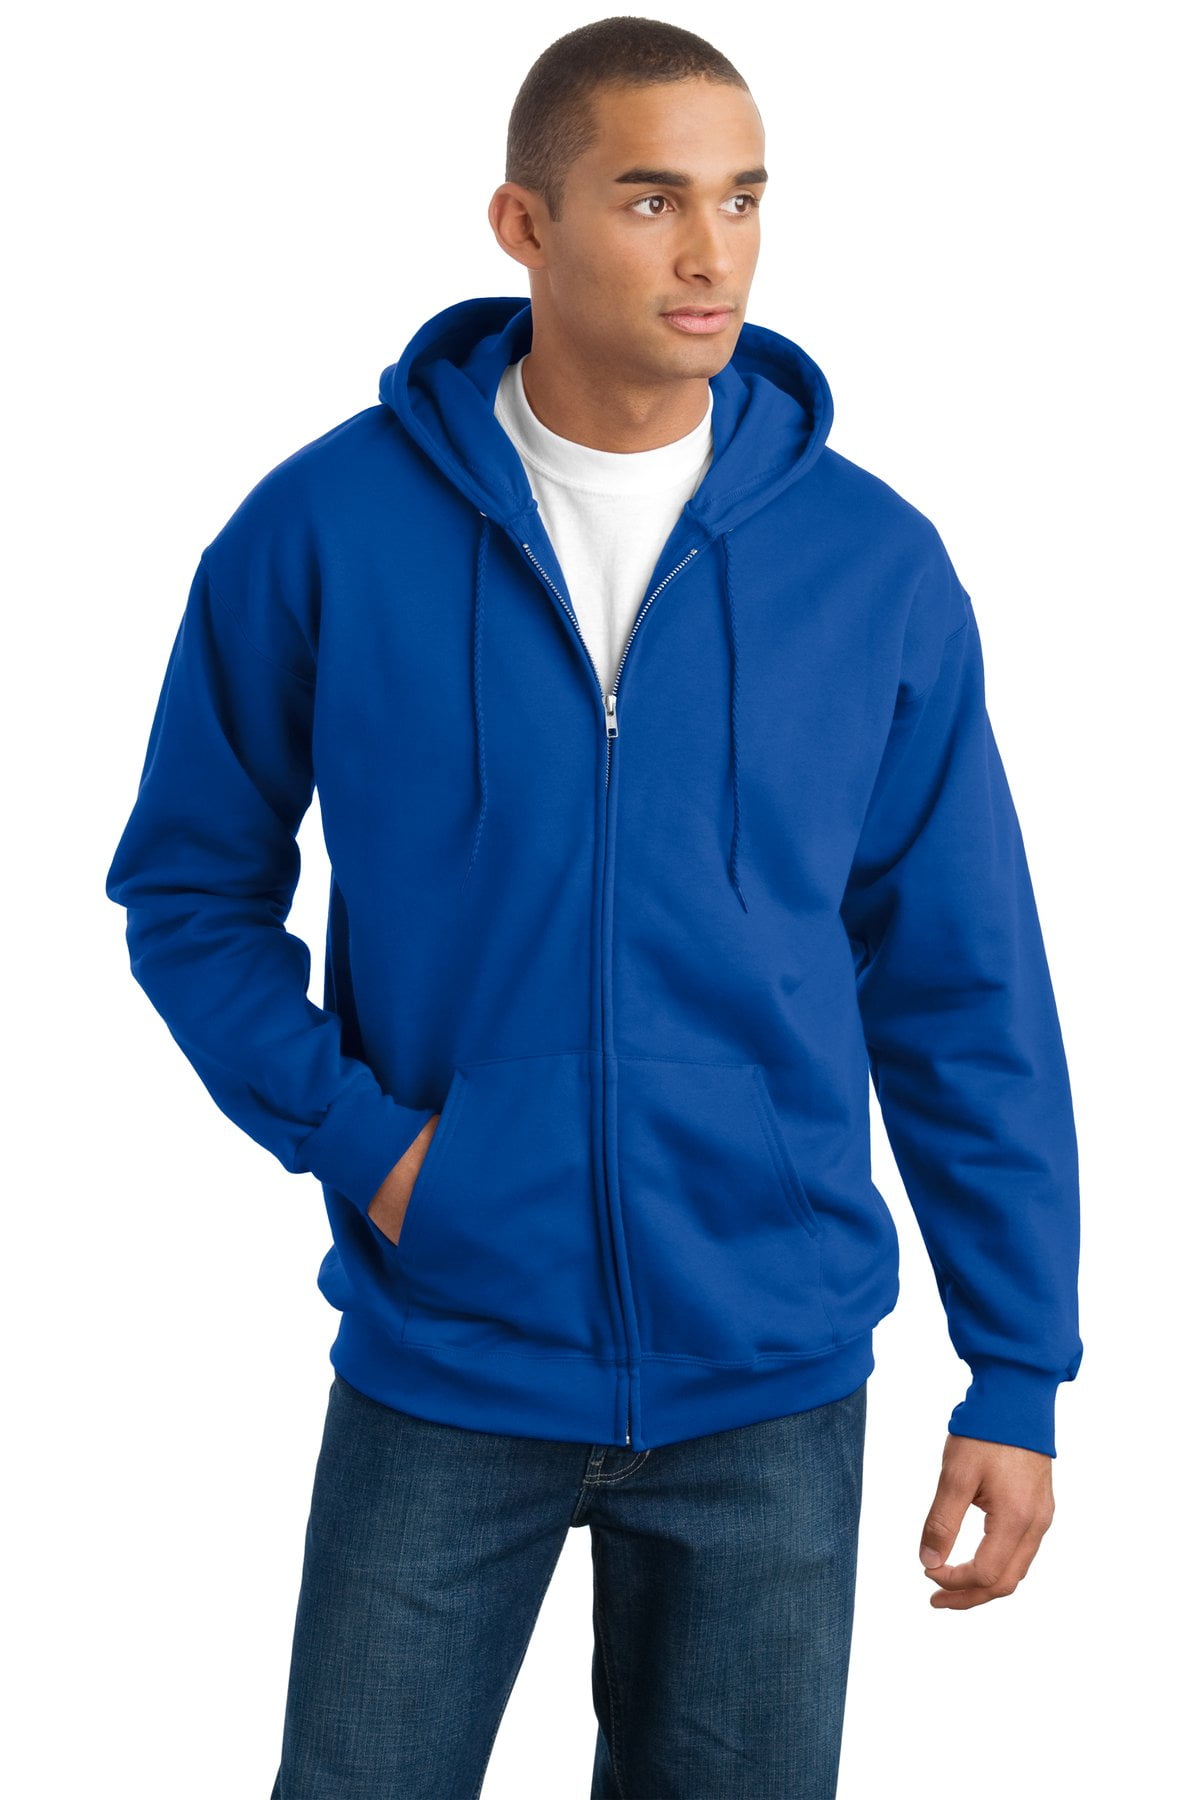 Hanes Men's Ultimate Cotton Full-Zip Hooded Sweatshirt - F283 - Walmart.com